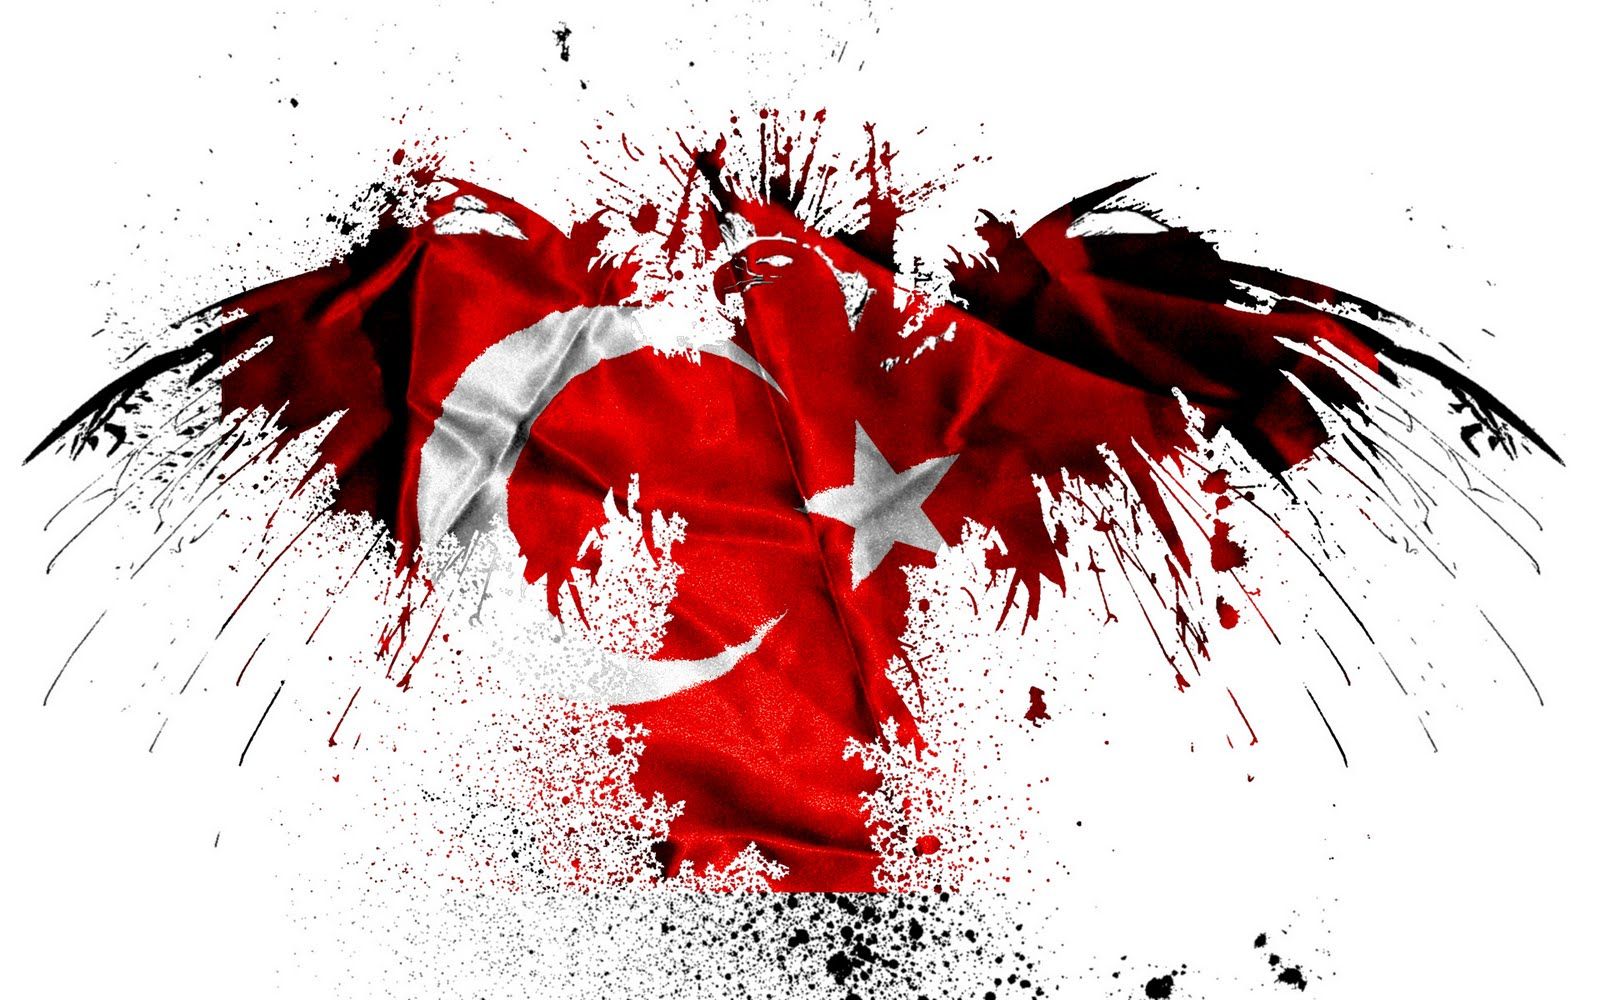 Kartal resimli turk bayraklari 3